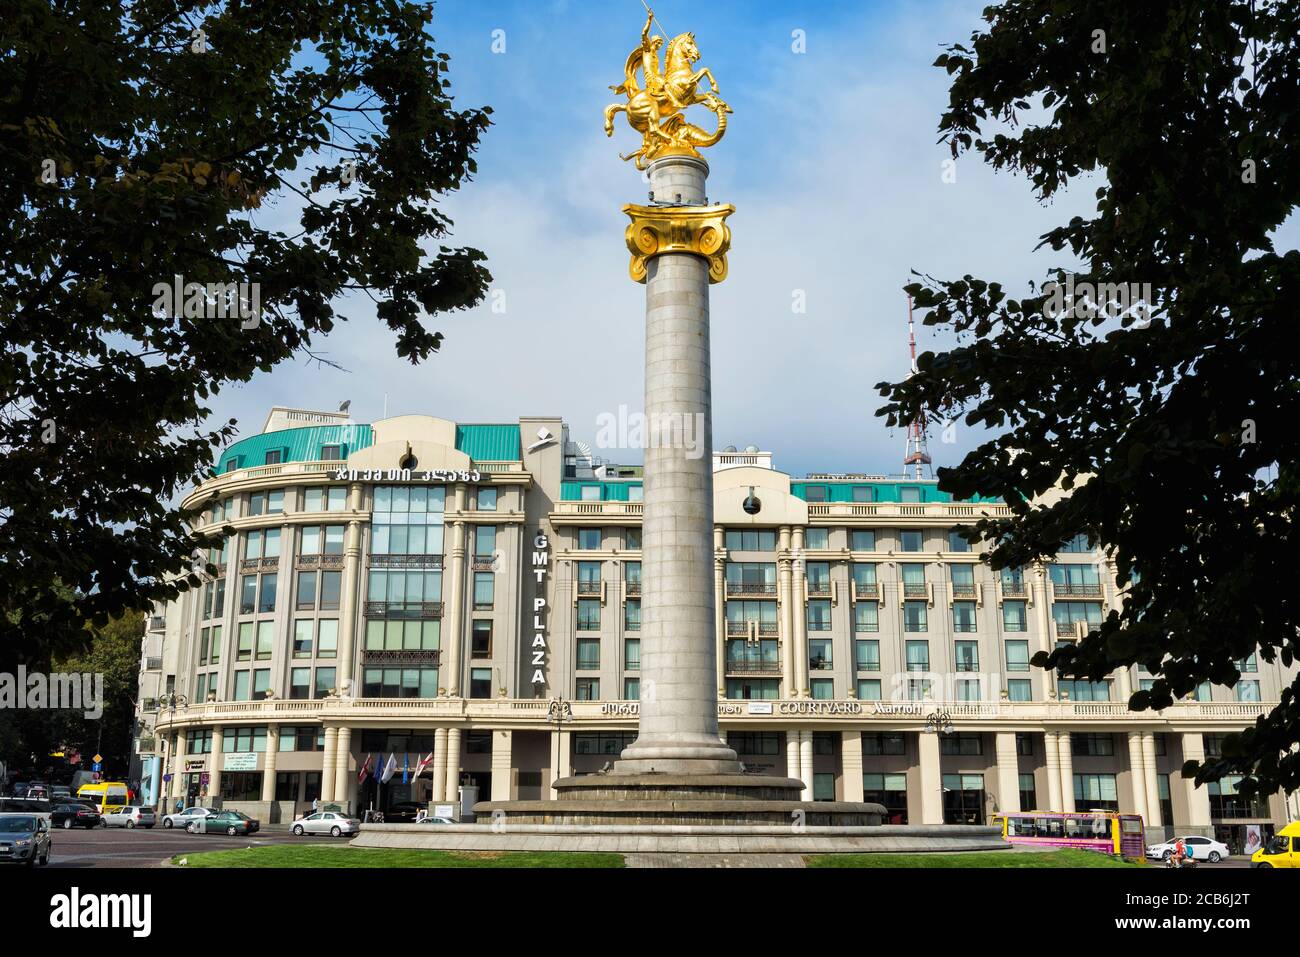 La place de la liberté et la statue dorée de Saint George combattant le dragon, Tbilissi, Géorgie, Caucase, Moyen-Orient, Asie Banque D'Images